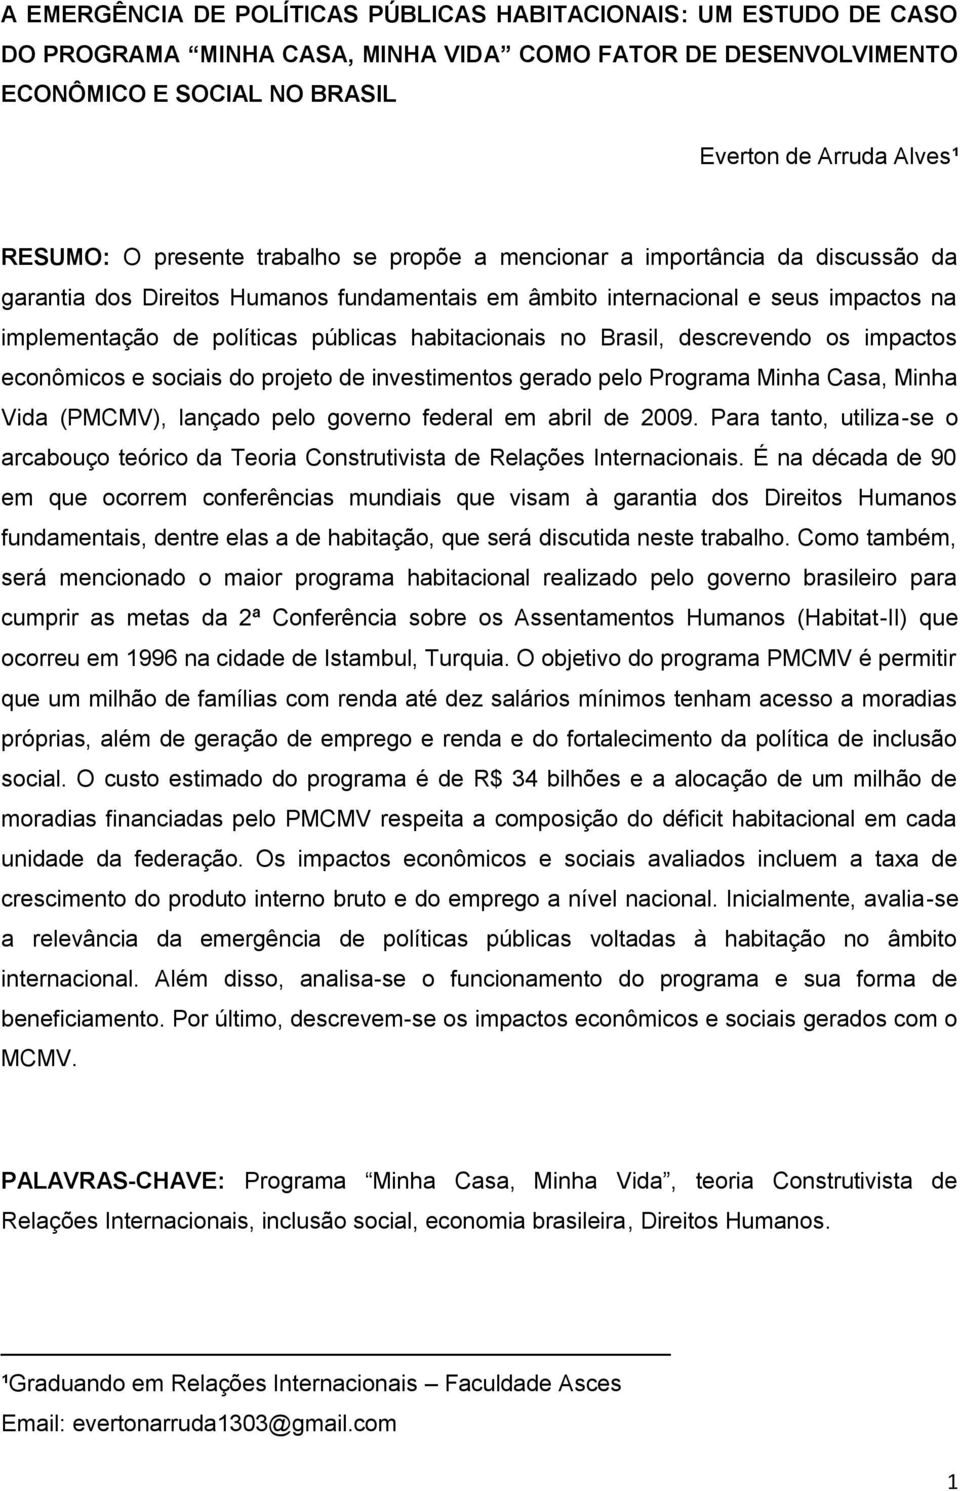 habitacionais no Brasil, descrevendo os impactos econômicos e sociais do projeto de investimentos gerado pelo Programa Minha Casa, Minha Vida (PMCMV), lançado pelo governo federal em abril de 2009.